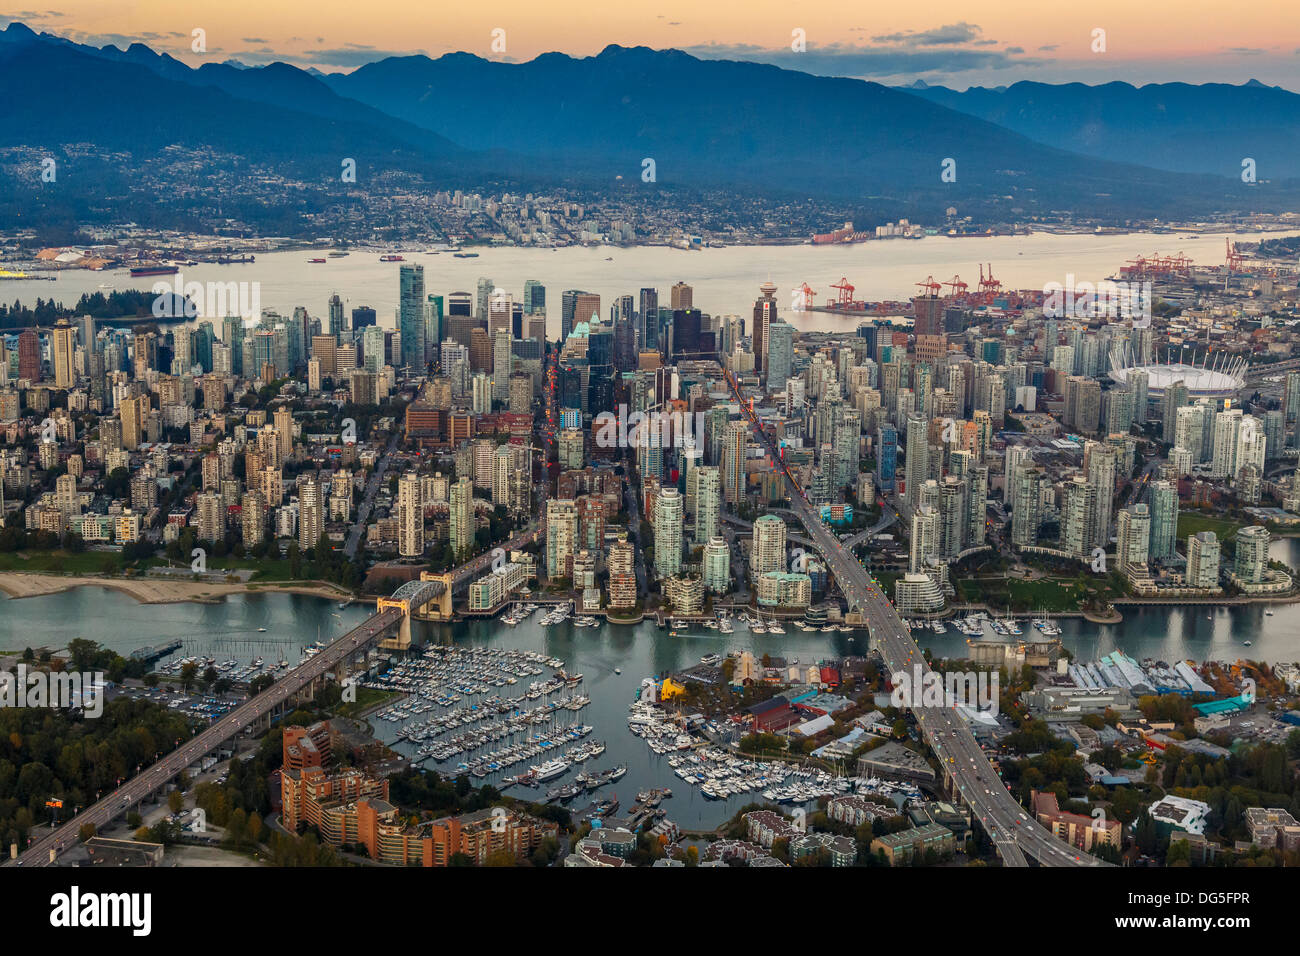 Il centro di Vancouver, British Columbia, Canada dall'aria con Granville Island in primo piano Foto Stock